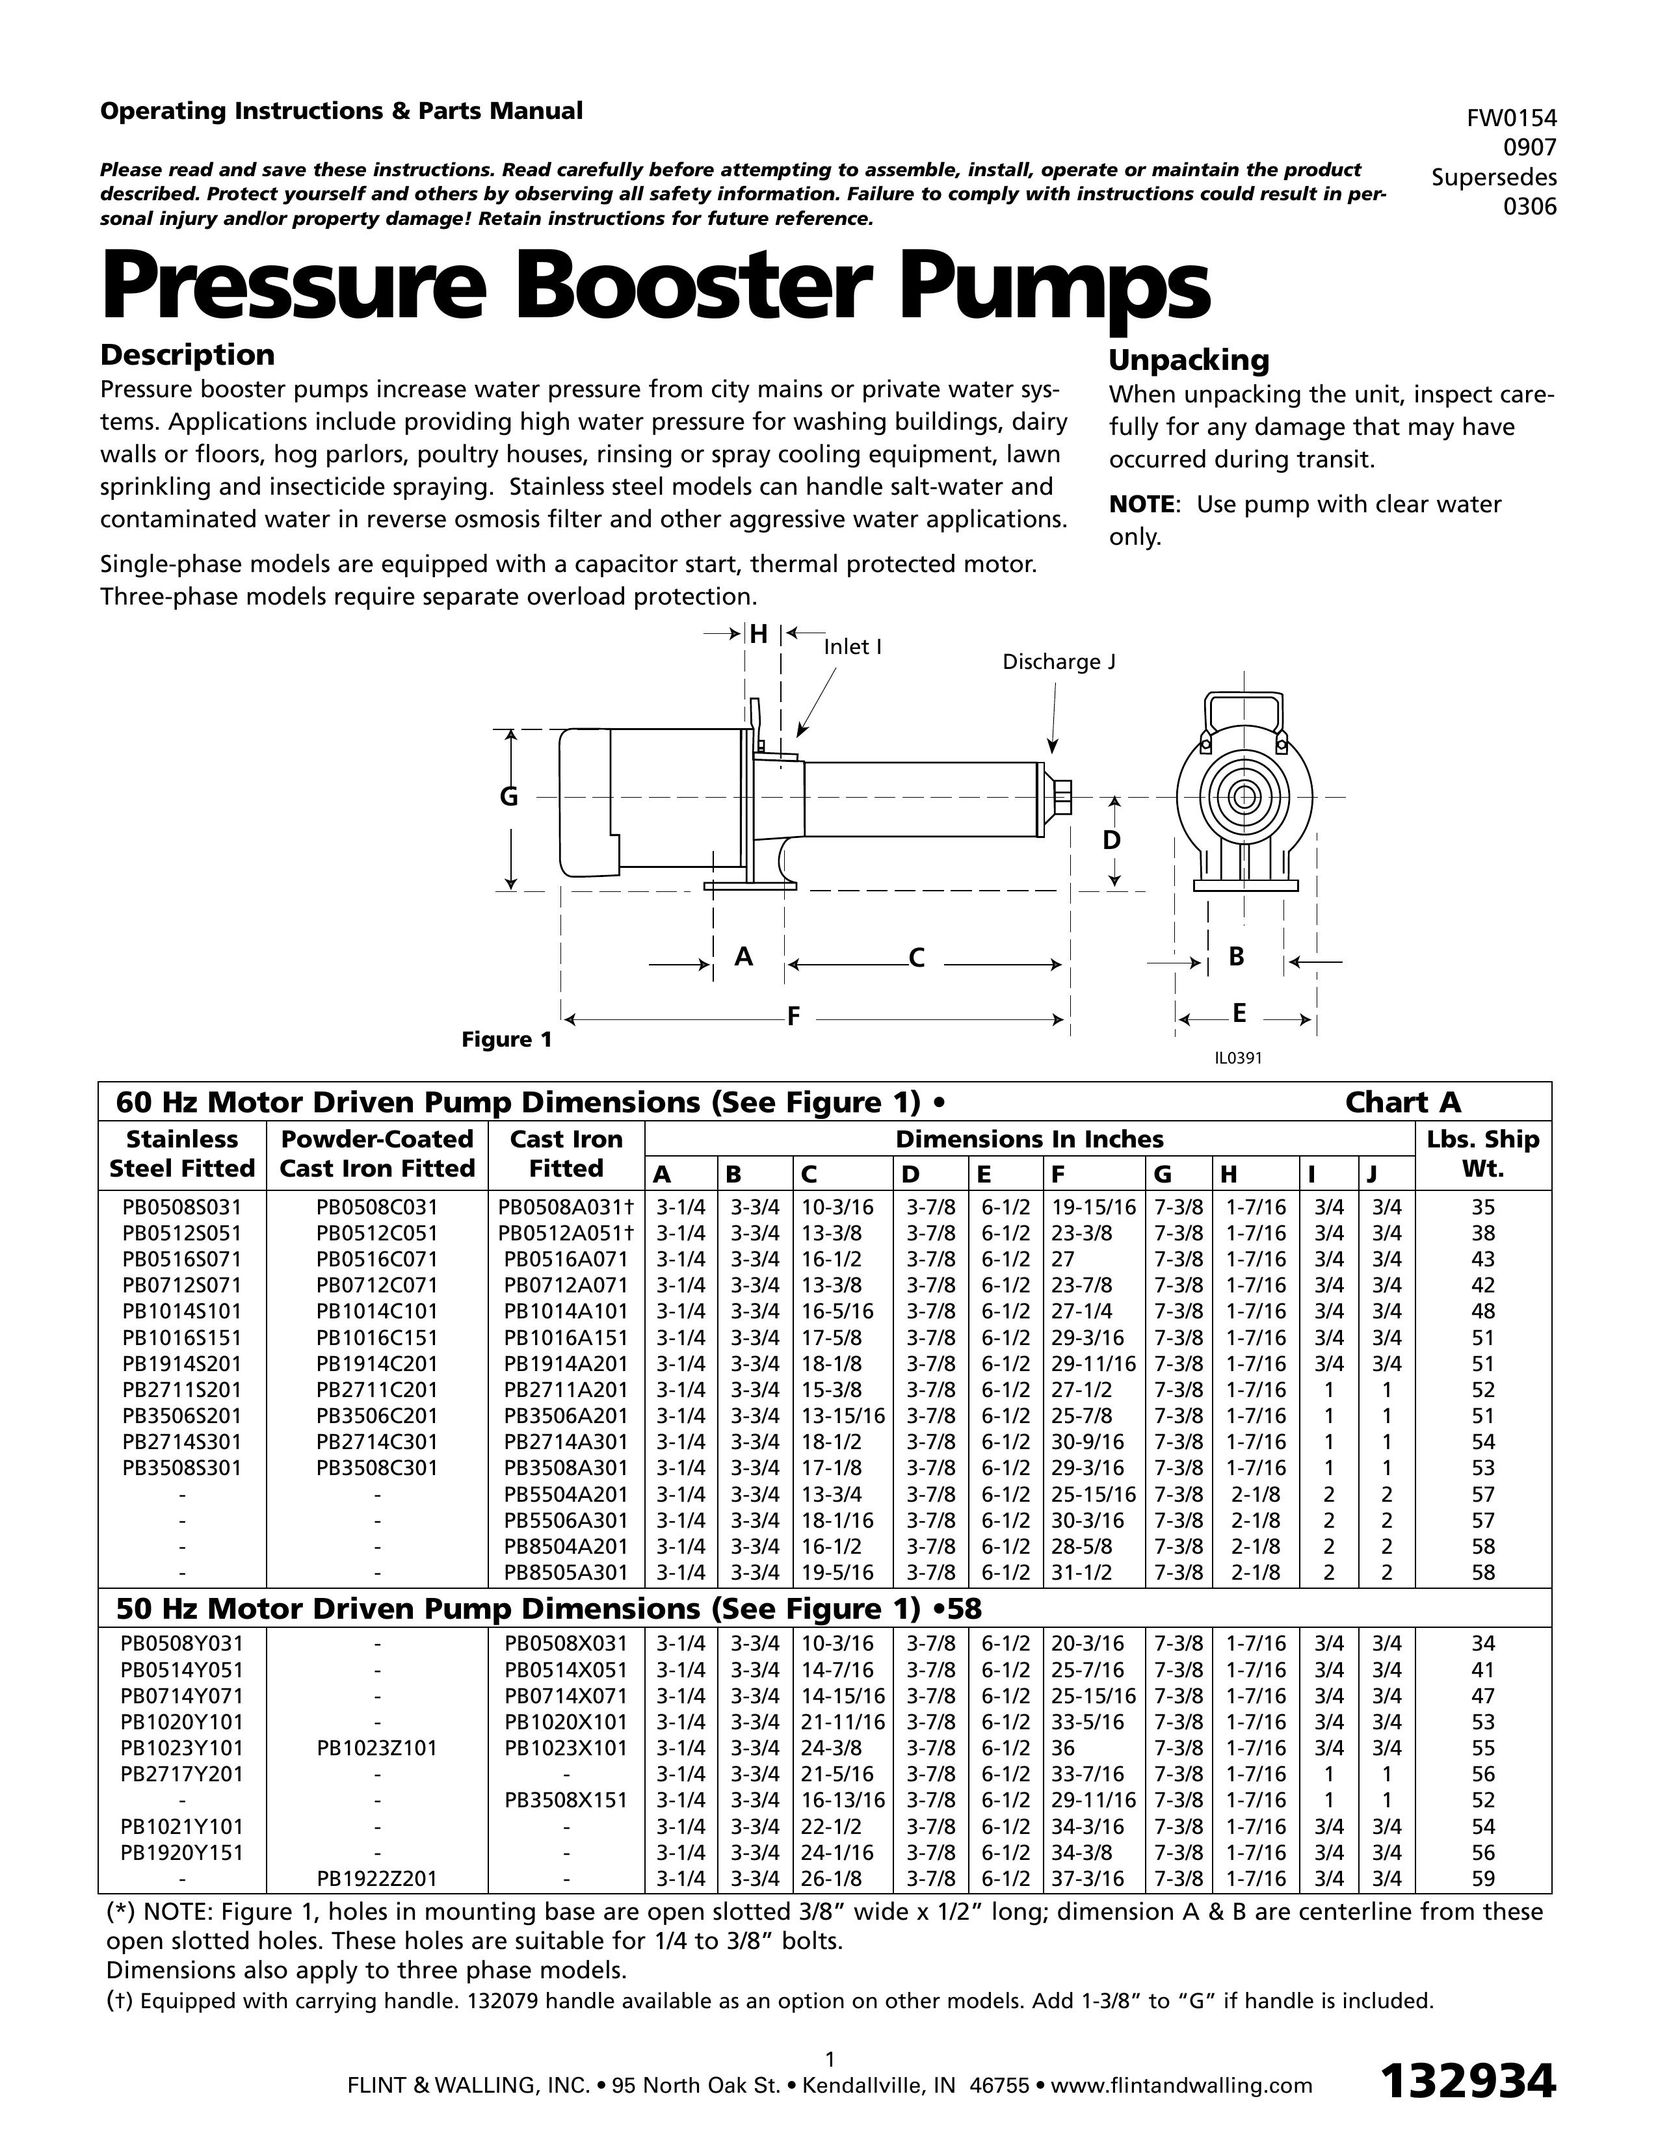 HP (Hewlett-Packard) IL0391 Water Pump User Manual